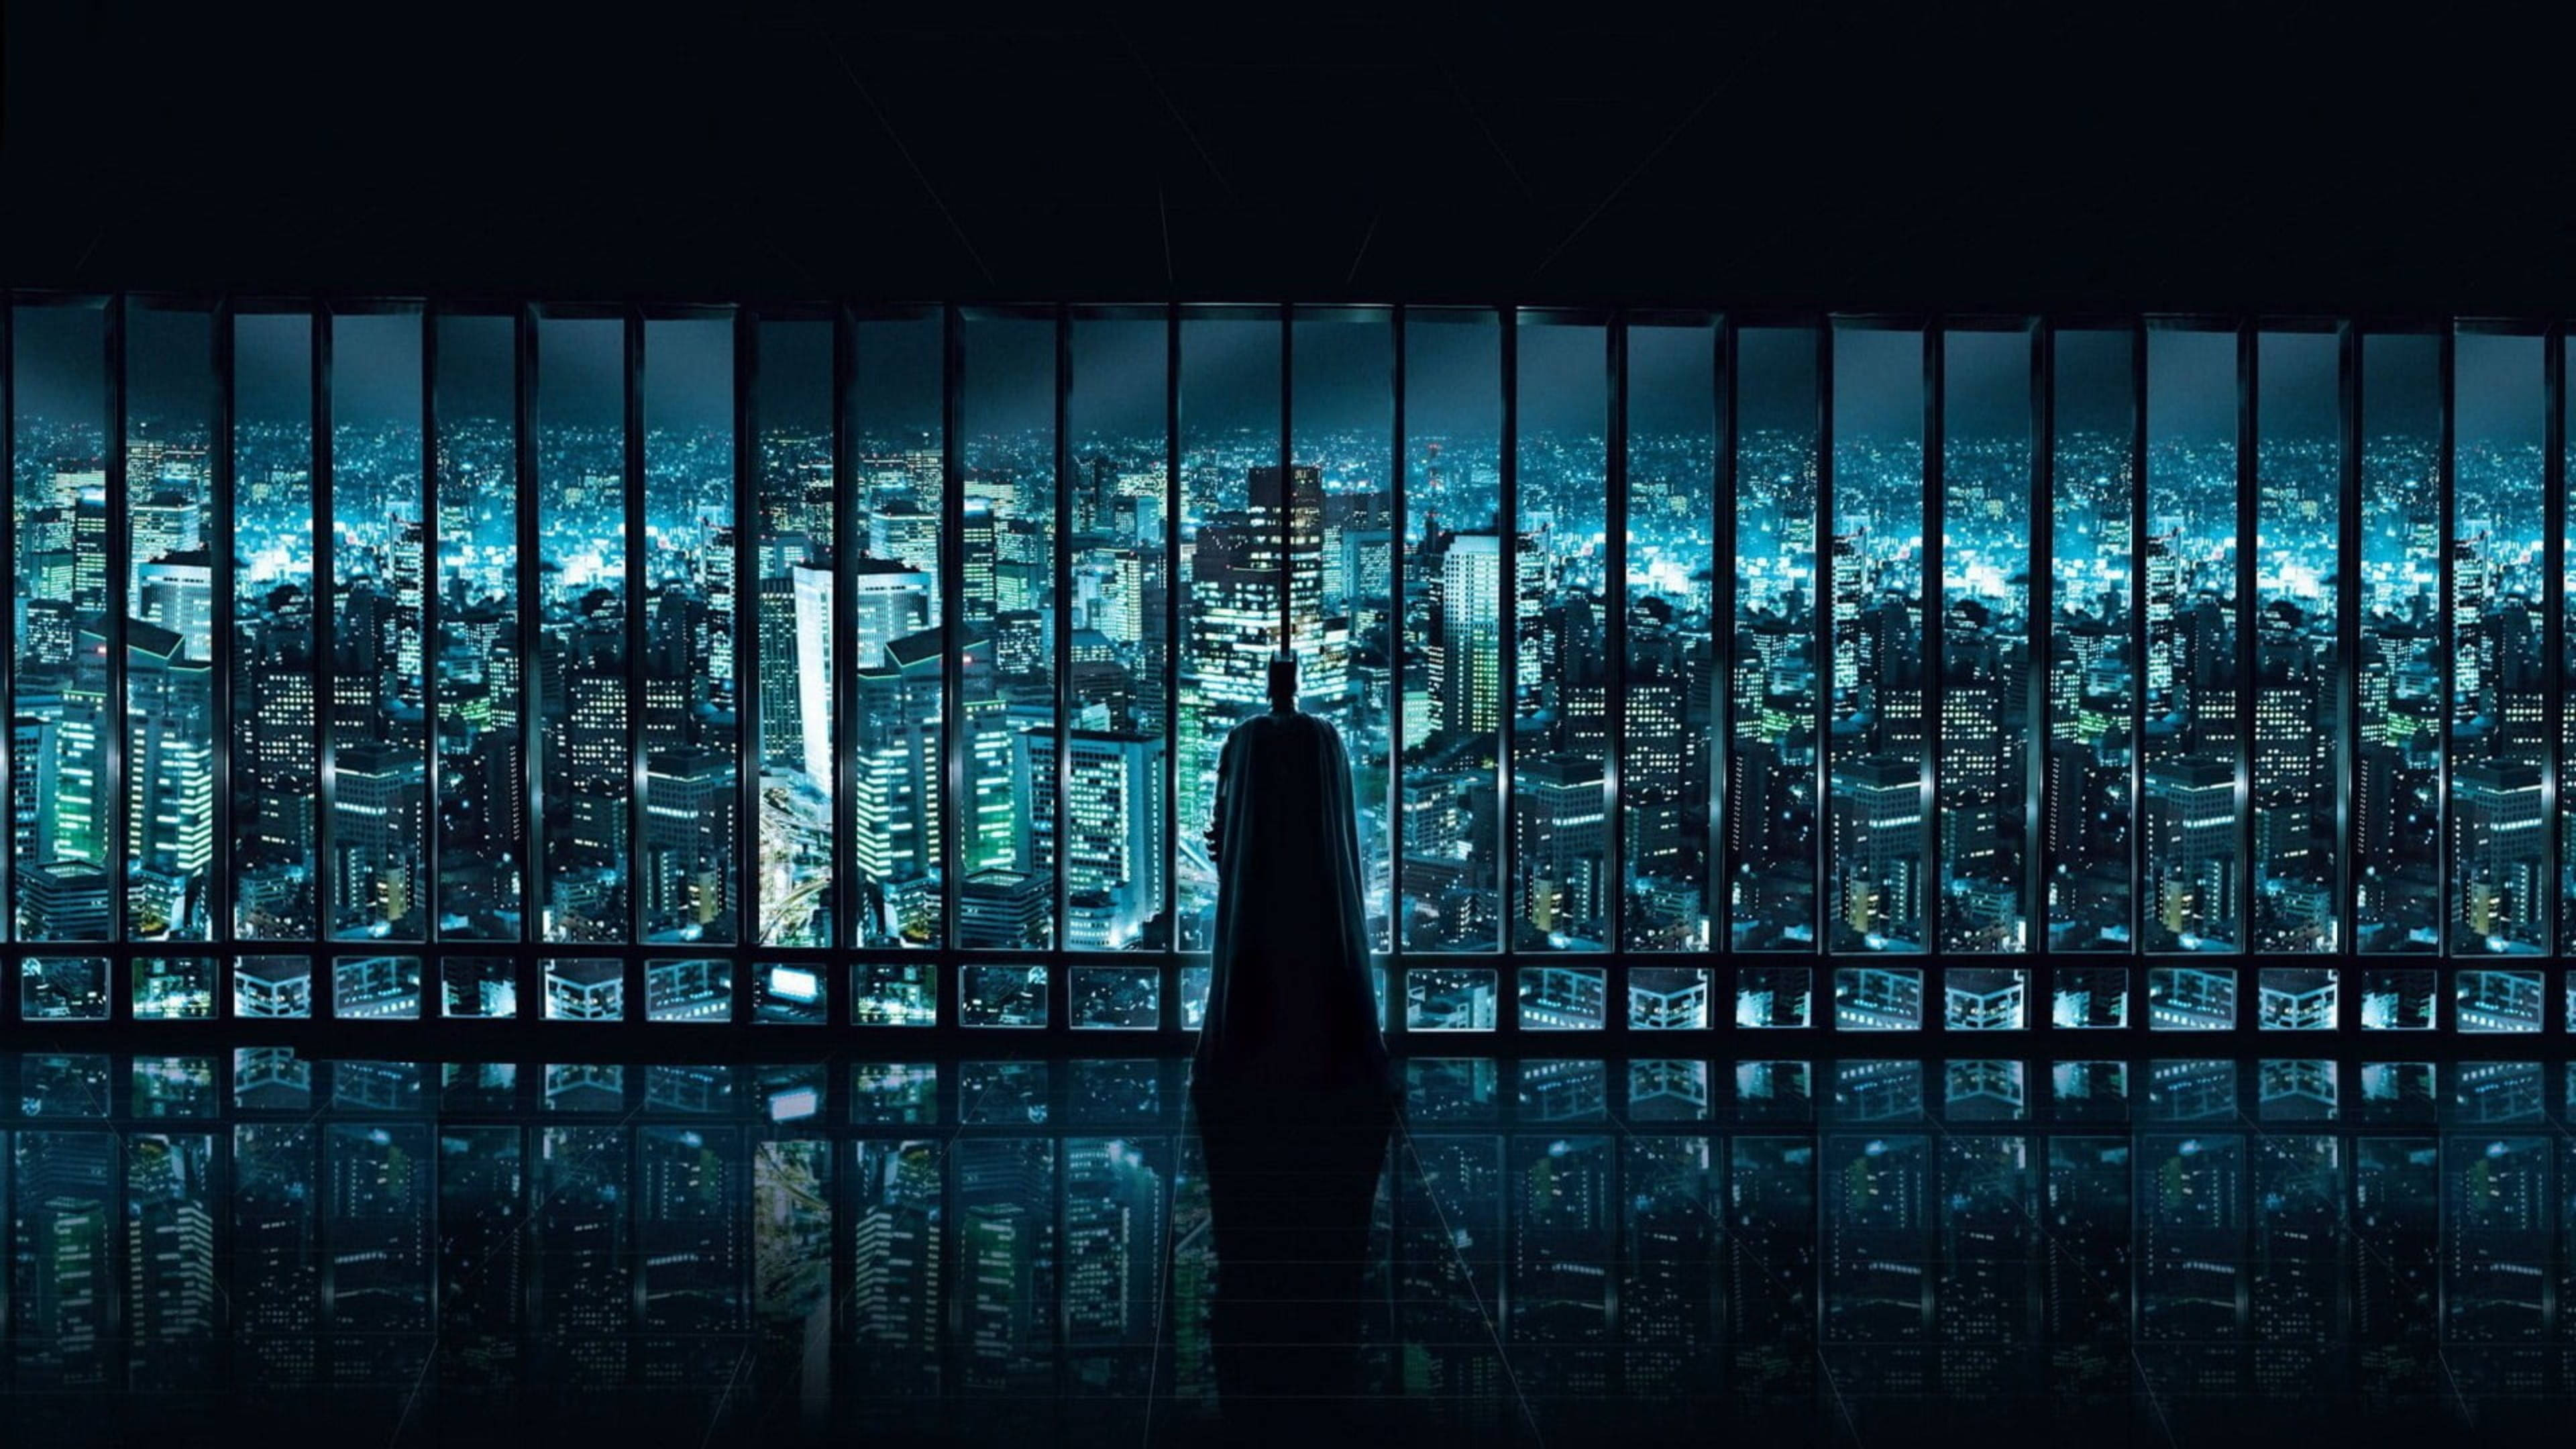 Batman Wallpaper sẽ khiến bạn cảm thấy như mình đang trực tiếp tham gia vào chuyến phiêu lưu đầy kịch tính của anh hùng Gotham. Hãy chia sẻ niềm đam mê và cảm giác mạnh mẽ của Batman, và hít thở sự tự do và quyết đoán như anh ta luôn truyền tải cho chúng ta.